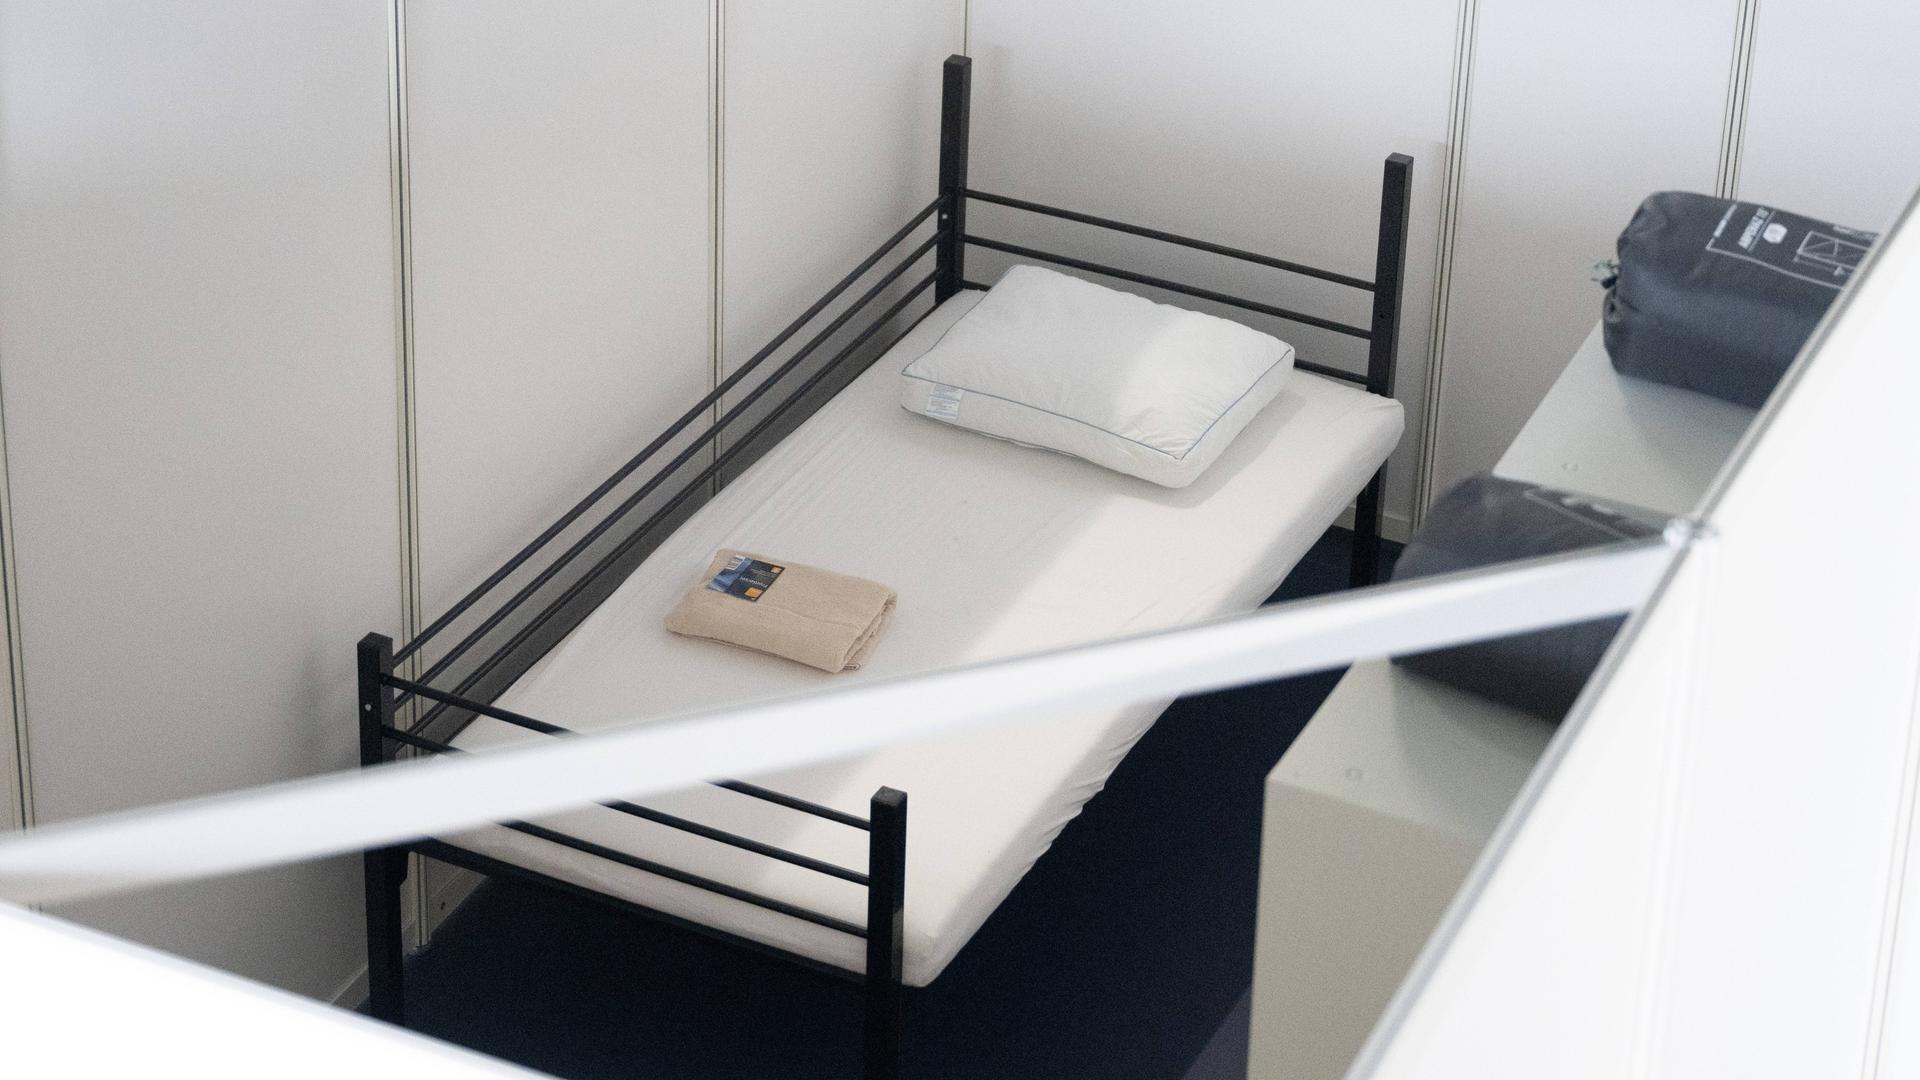 Ein Bett steht in einer Halle, die Flüchtlingsunterkunft werden sollte.